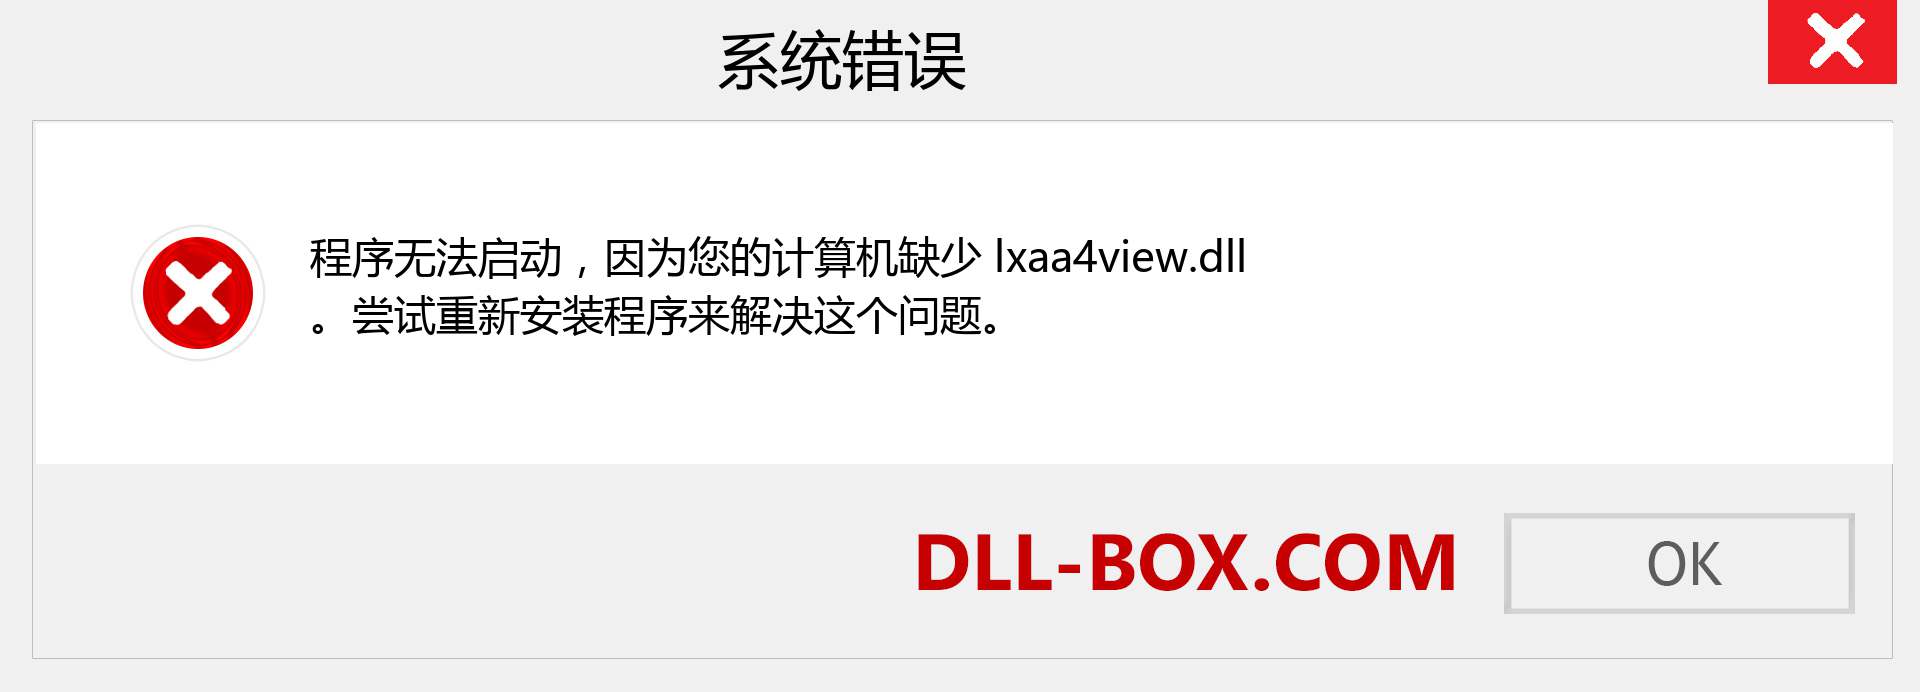 lxaa4view.dll 文件丢失？。 适用于 Windows 7、8、10 的下载 - 修复 Windows、照片、图像上的 lxaa4view dll 丢失错误